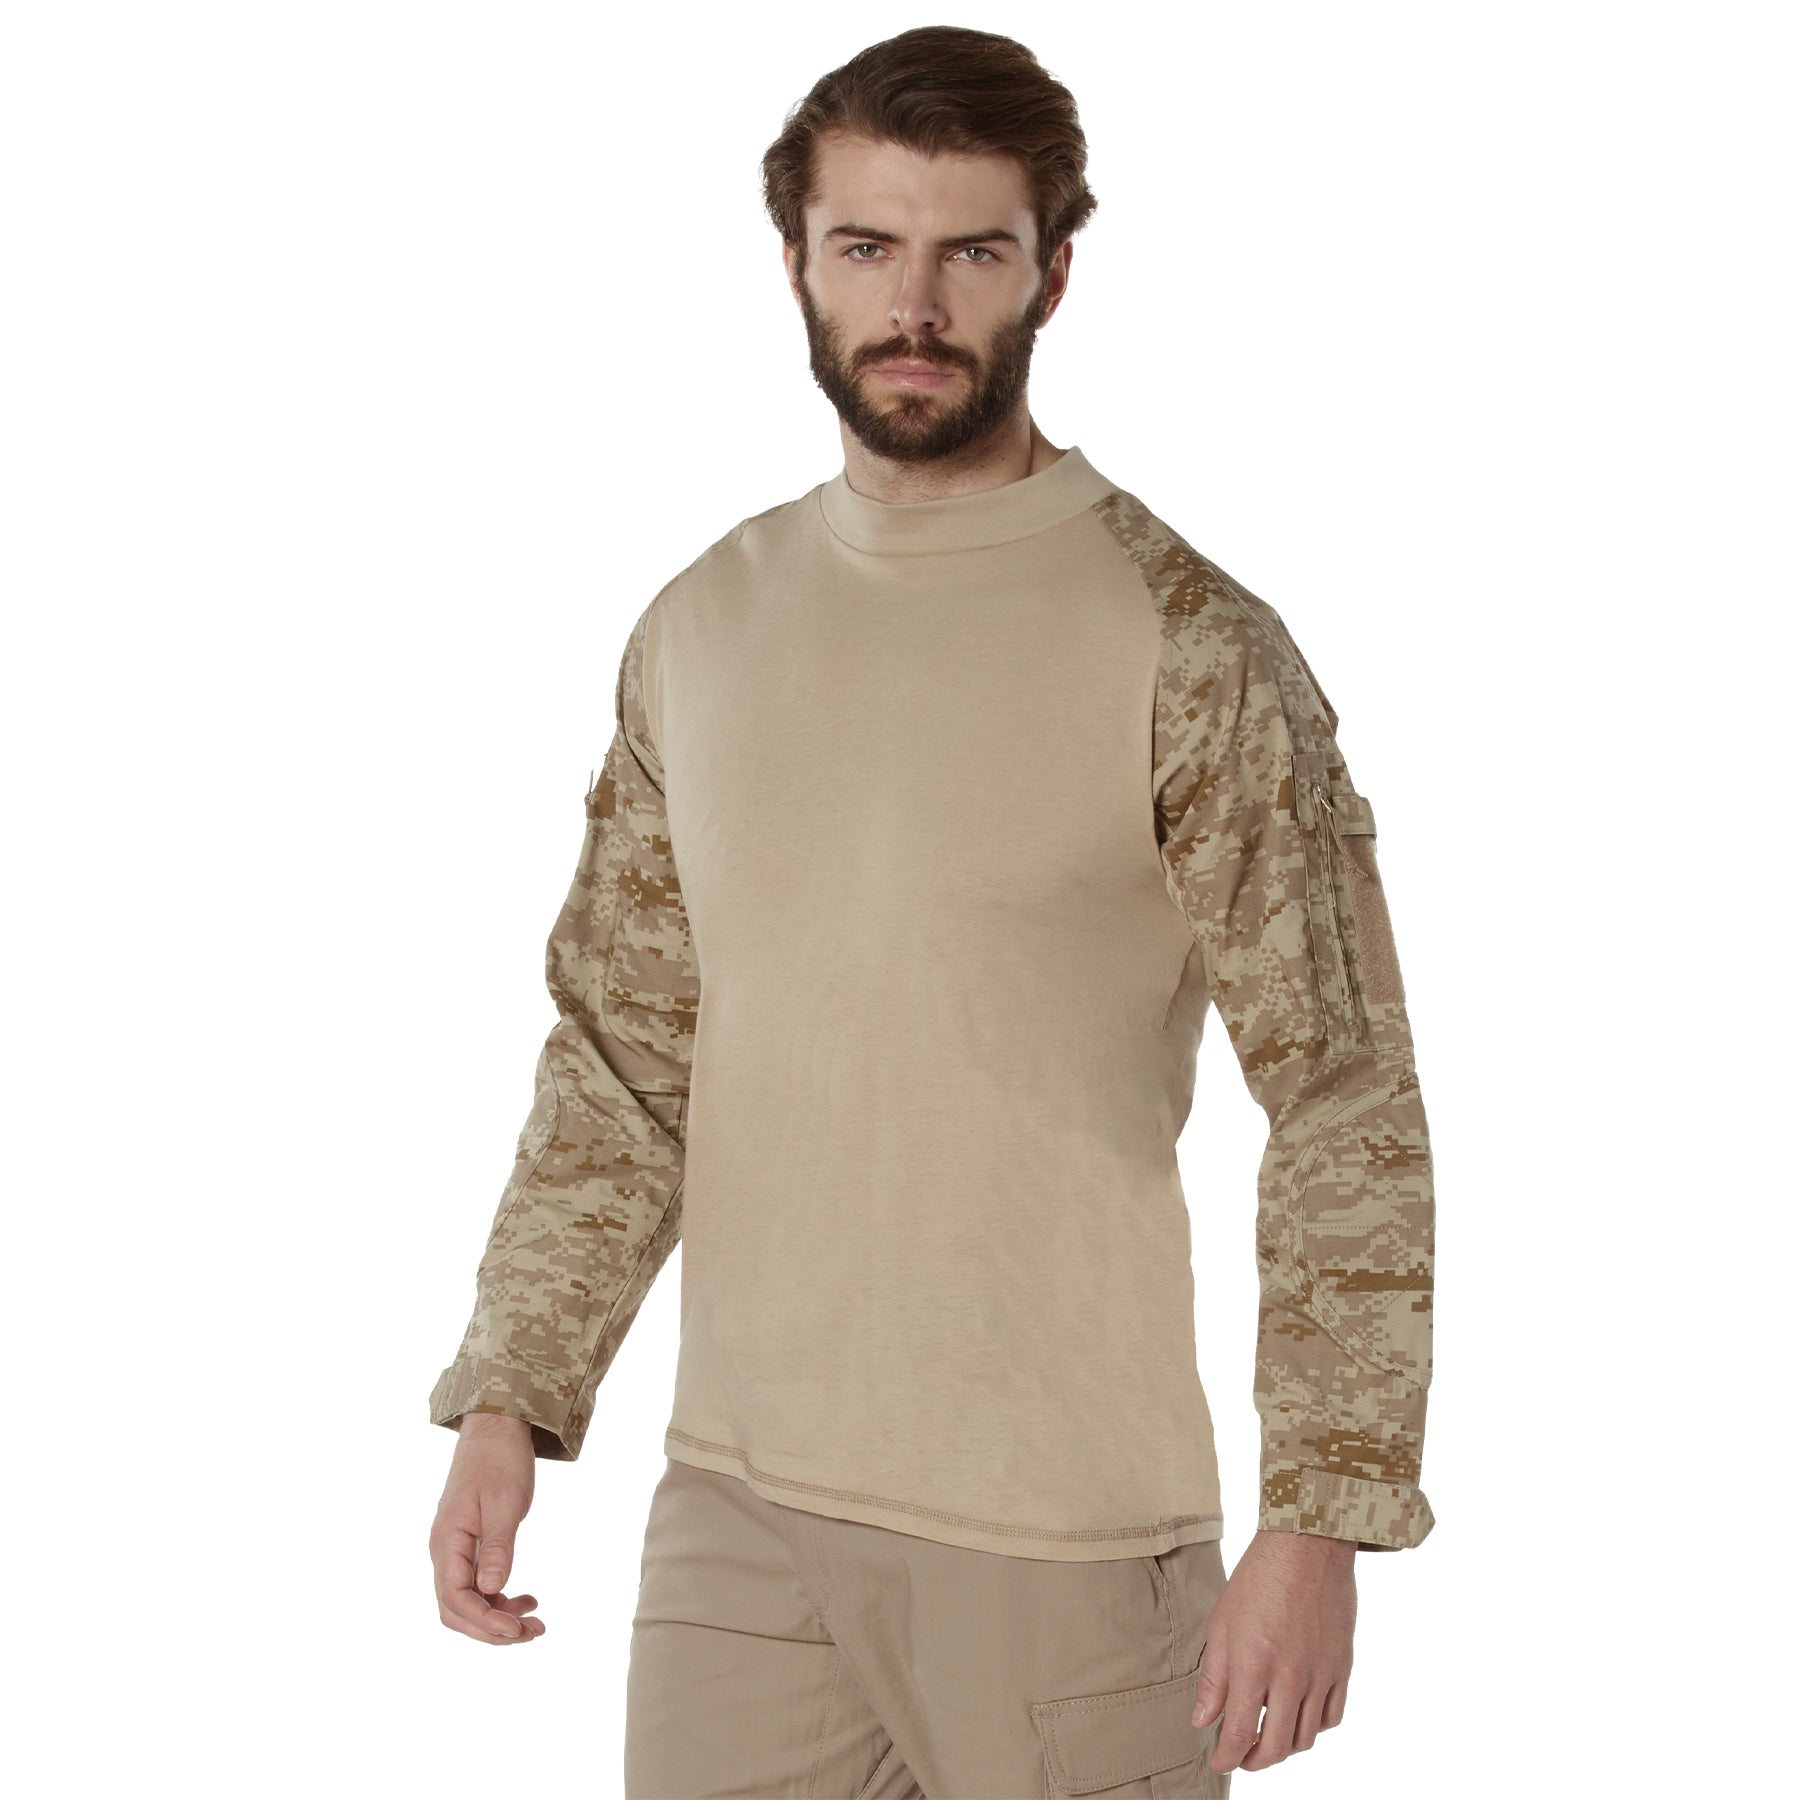 Digital Camo Poly/Cotton Tactical Combat Shirts Desert Digital Camo